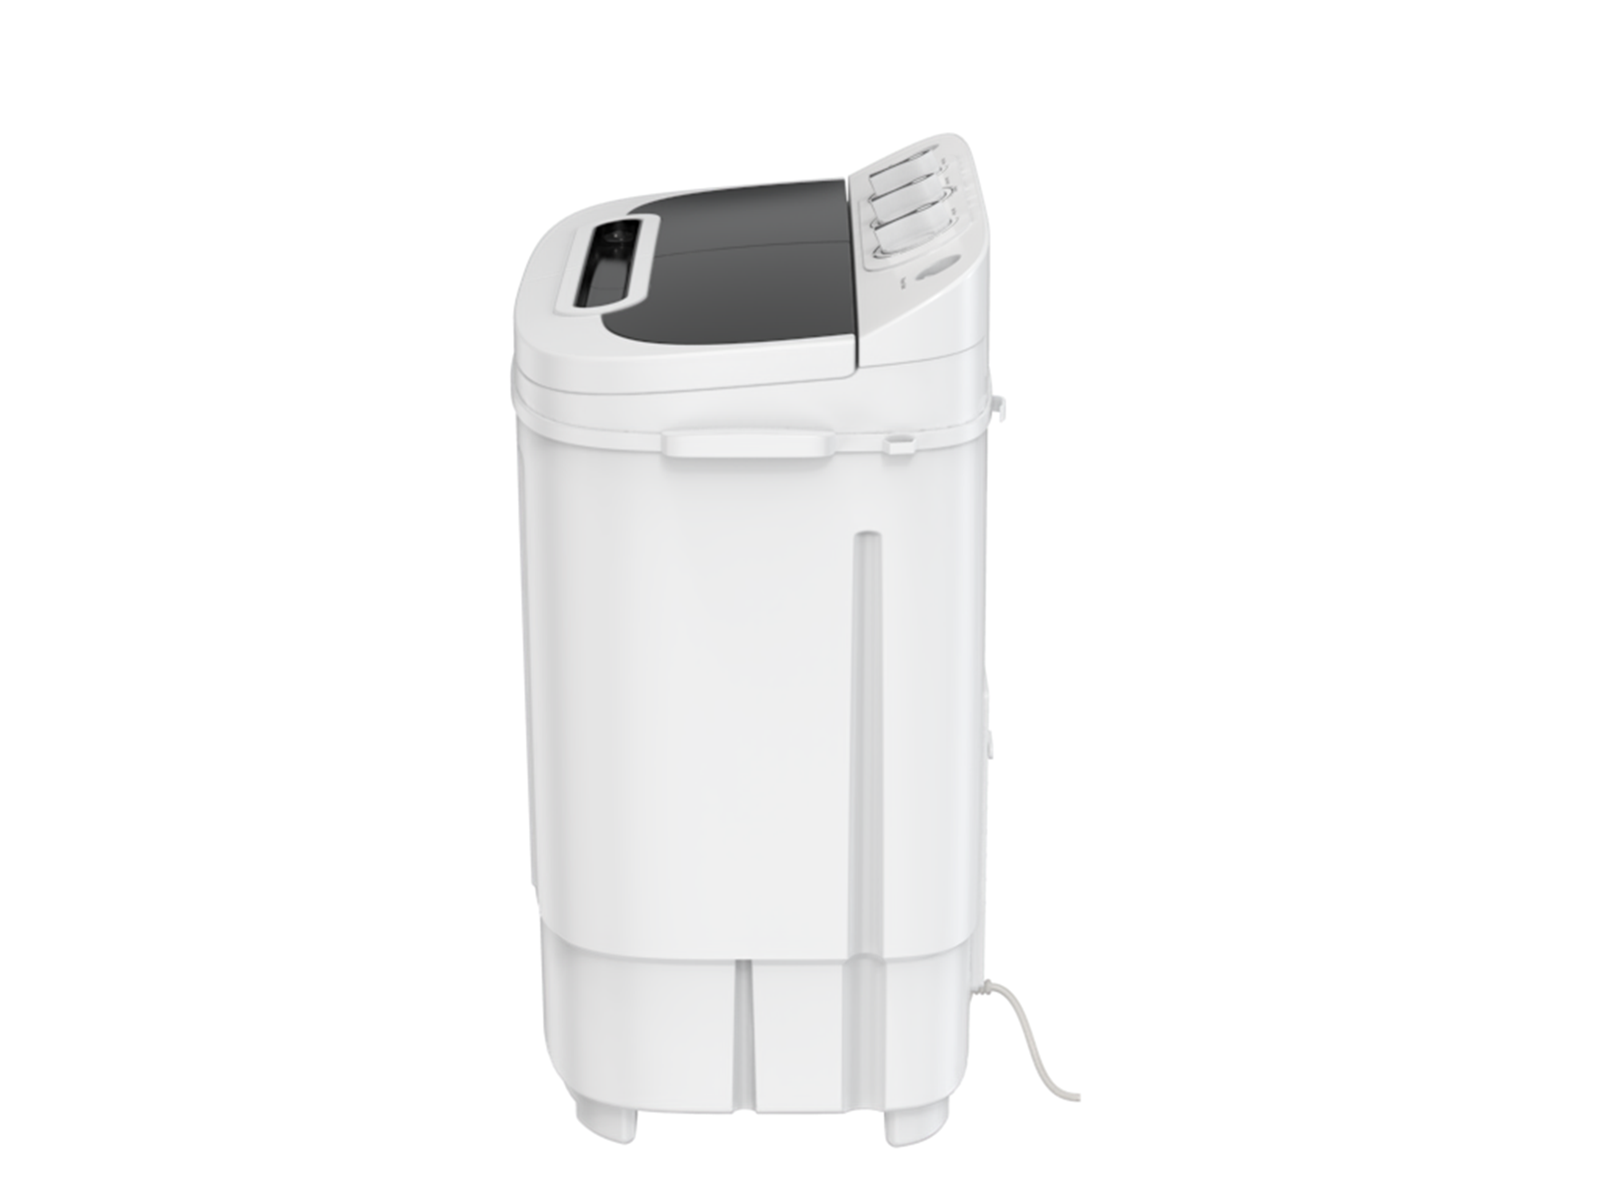 ZENY H01-1568A 13lbs Portable Mini Washing Machine - White